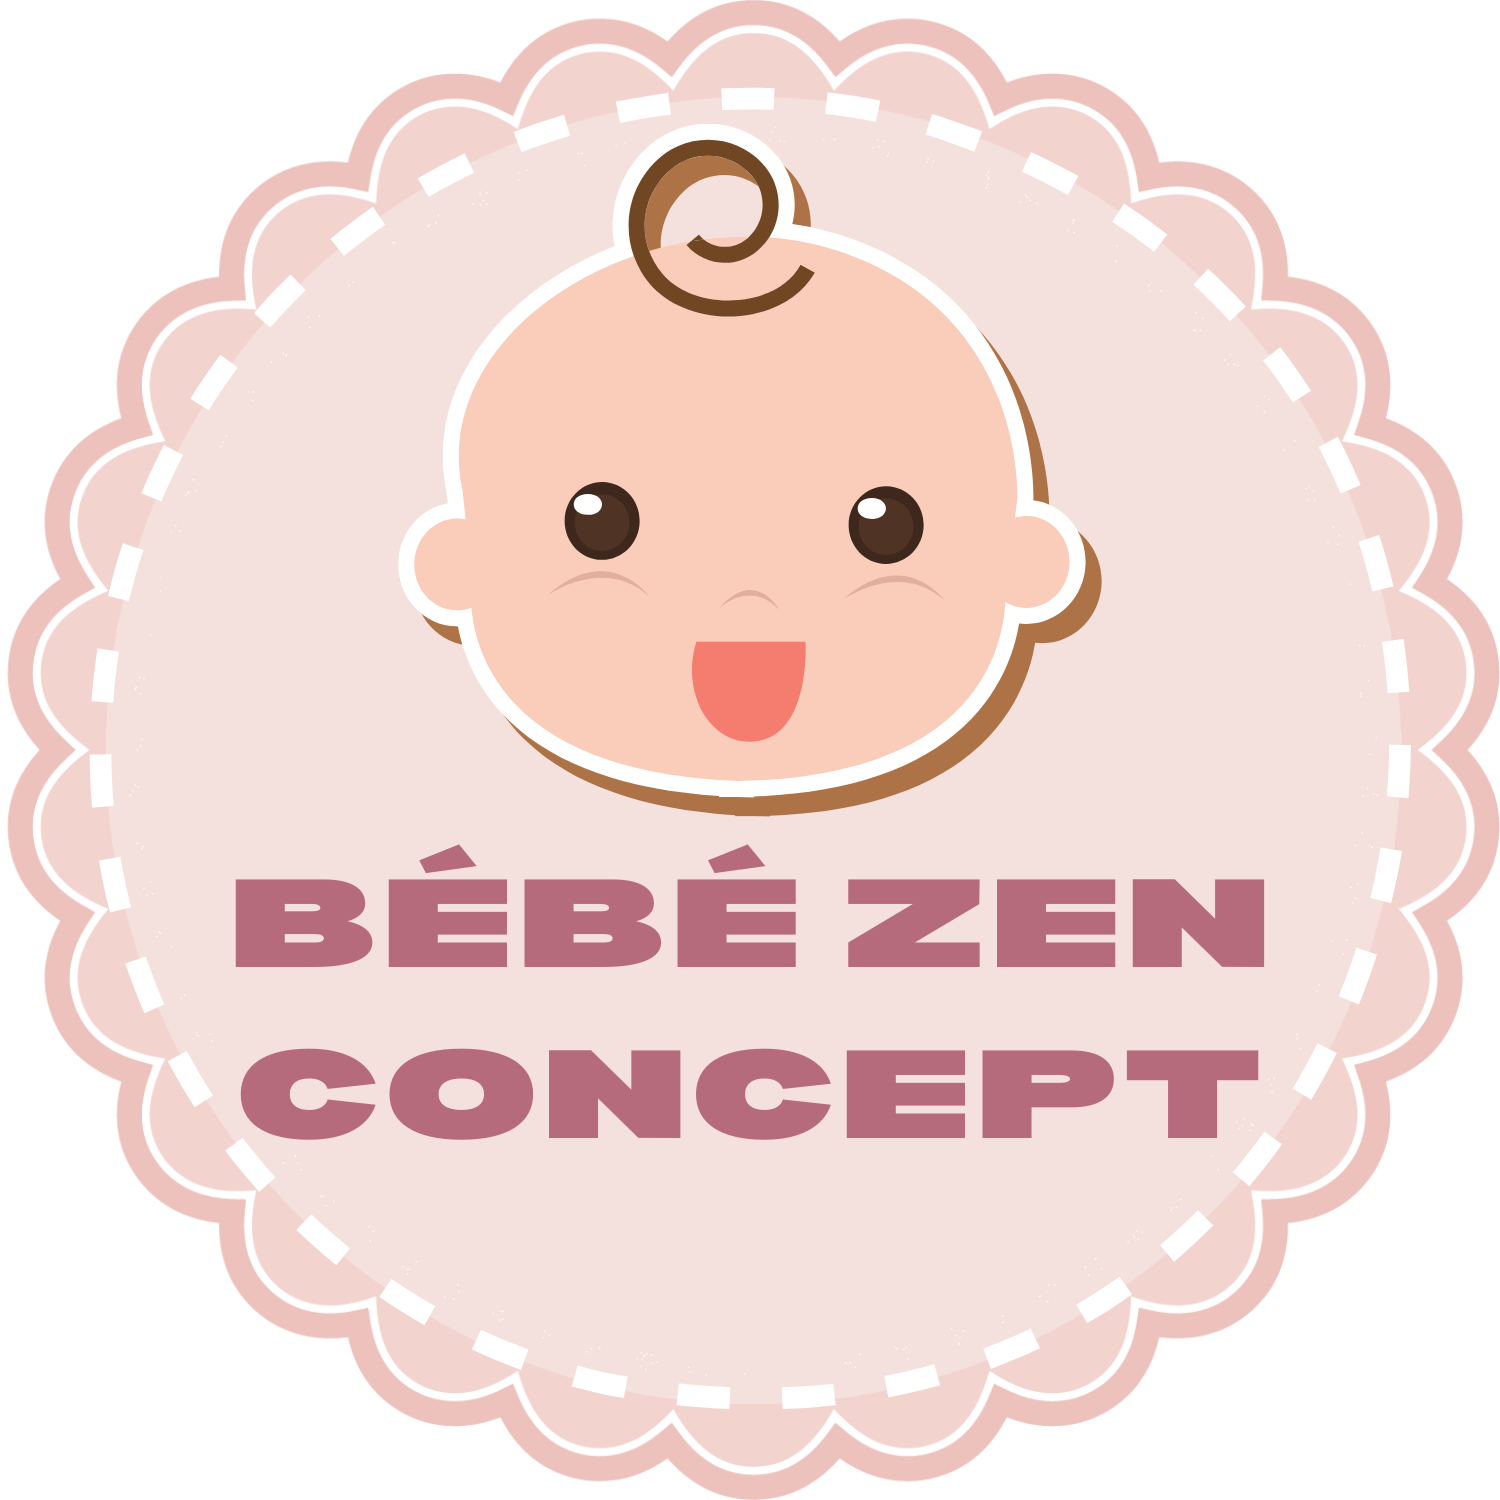 bébé zen concept